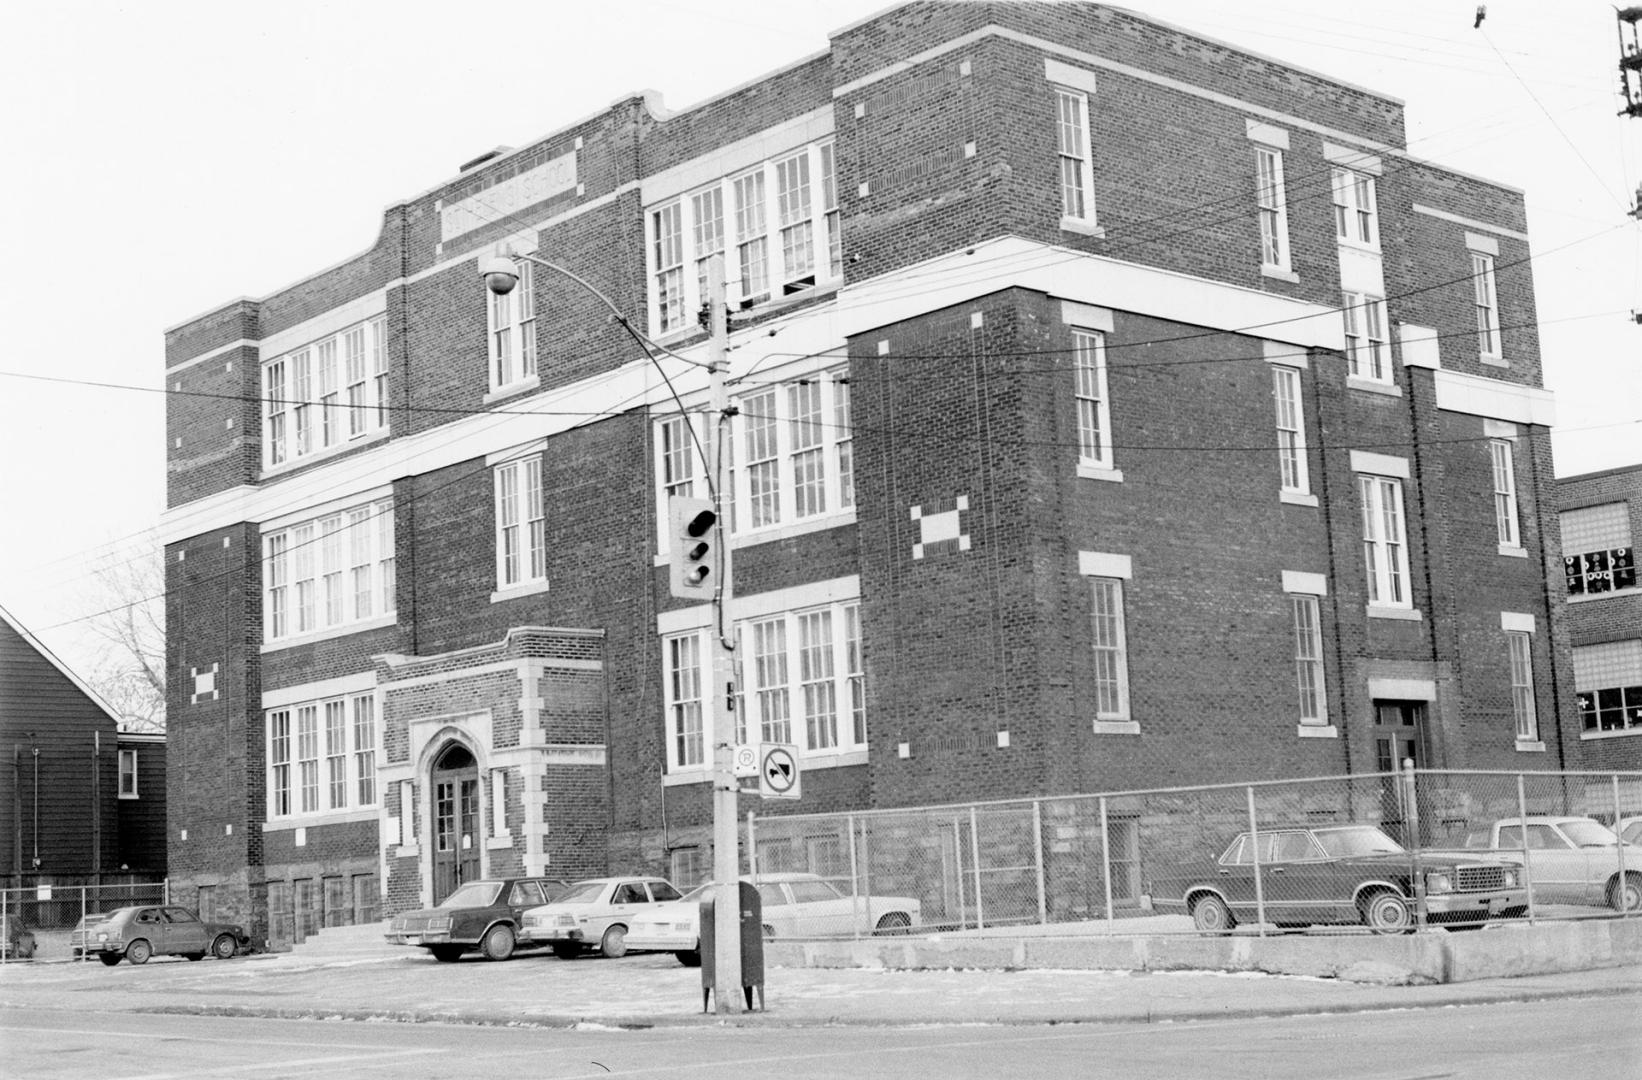 St. Helen's School, College Street, northeast corner of Brock Avenue, Toronto, Ont.